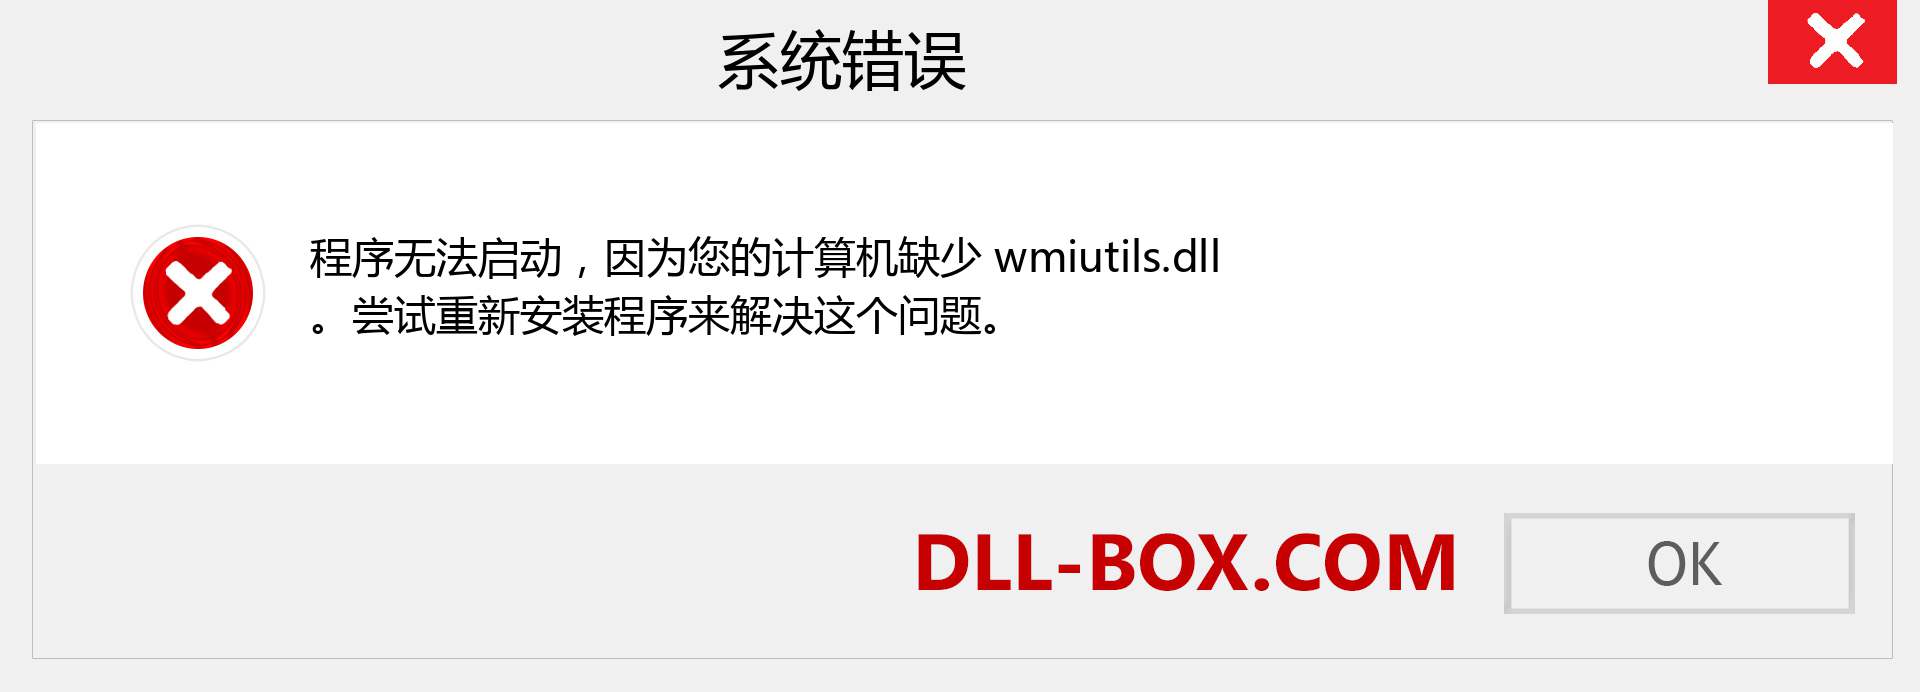 wmiutils.dll 文件丢失？。 适用于 Windows 7、8、10 的下载 - 修复 Windows、照片、图像上的 wmiutils dll 丢失错误